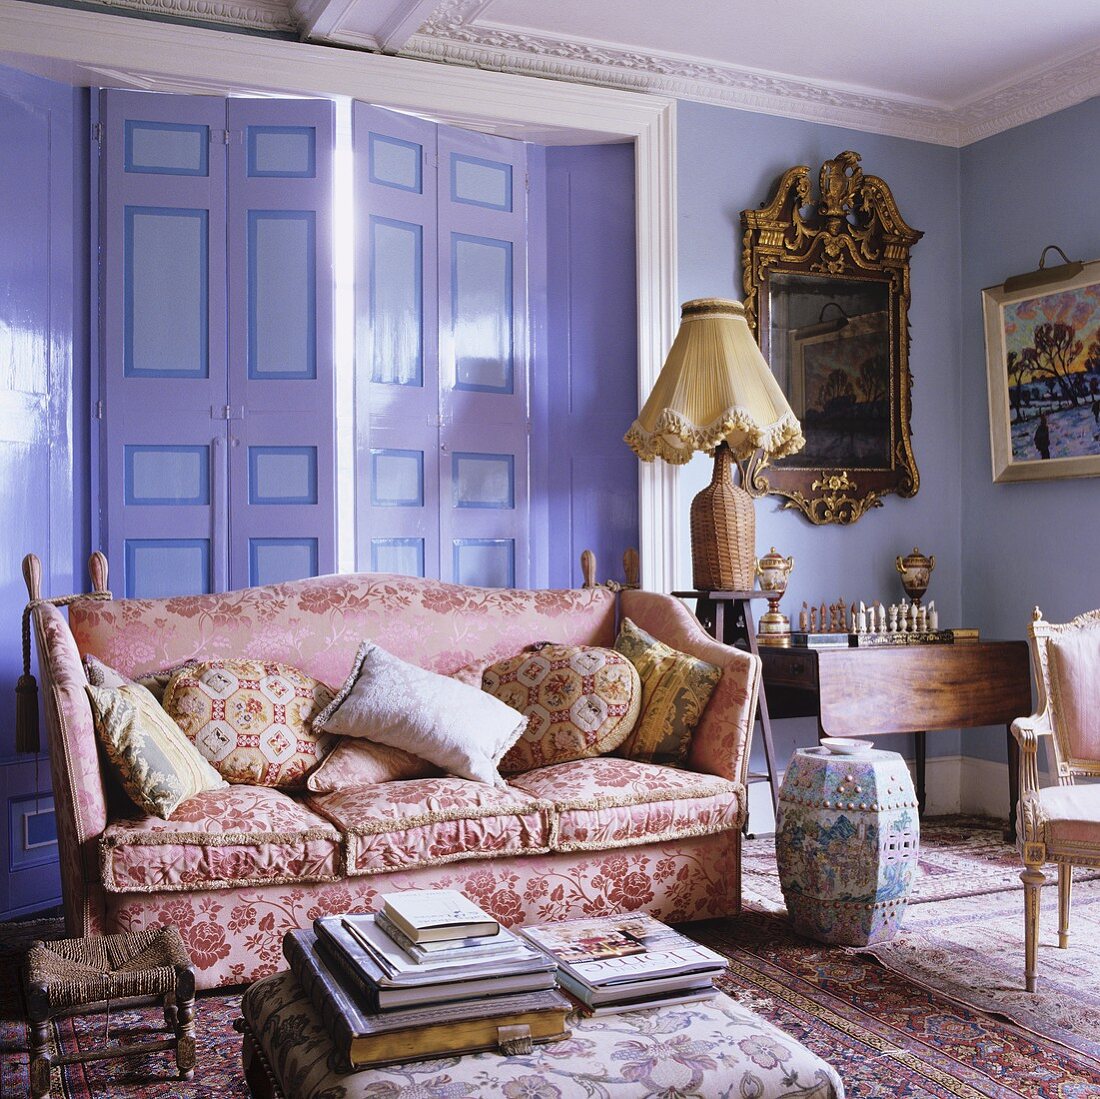 Rosa glänzendes Sofa und antike Kleinmöbel im fliederfarbenen Wohnraum eines Landhauses